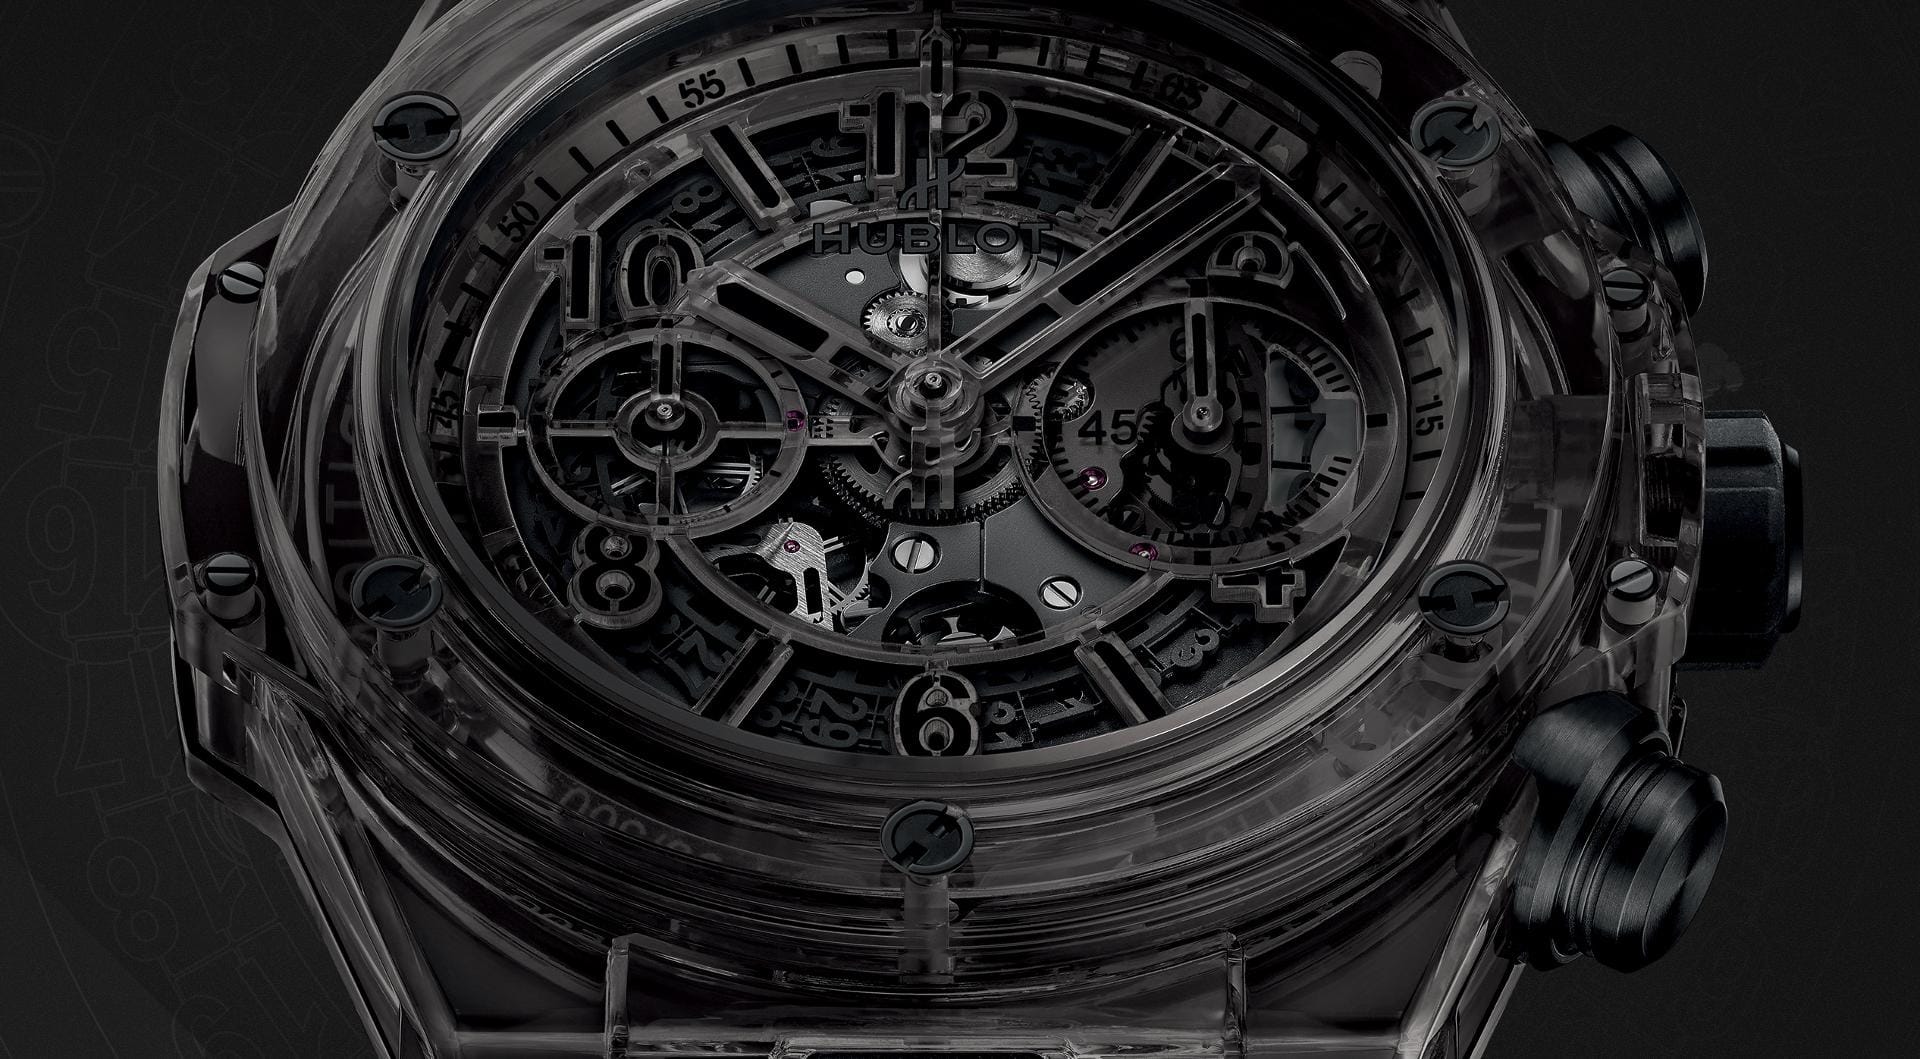 Ein wichtiger Trend in der Welt der feinen Zeitmesser sind derzeit Uhren aus ungewöhlichen Materialien. Ein Paradebeispiel ist die Bing Band Unico Sapphire von Hublot, deren Gehäuse aus Saphierglas besteht. Die Hublot wirkt wie eine gläserne Uhr und kostet knapp über 50.000 Euro.